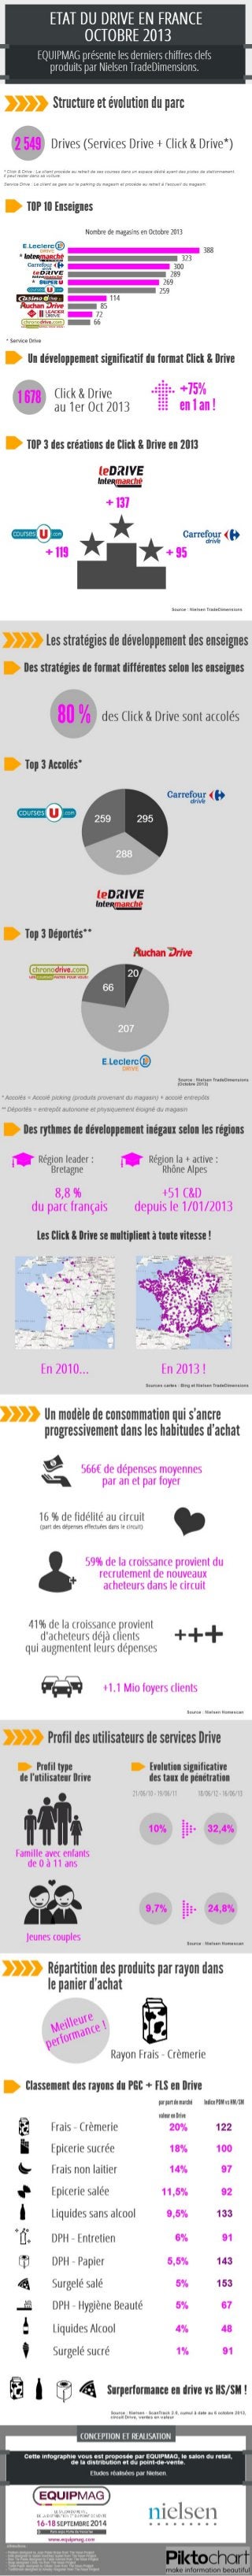 Infographie : le Drive en France, nouvel eldorado ? Chiffres Nielsen octobre 2013